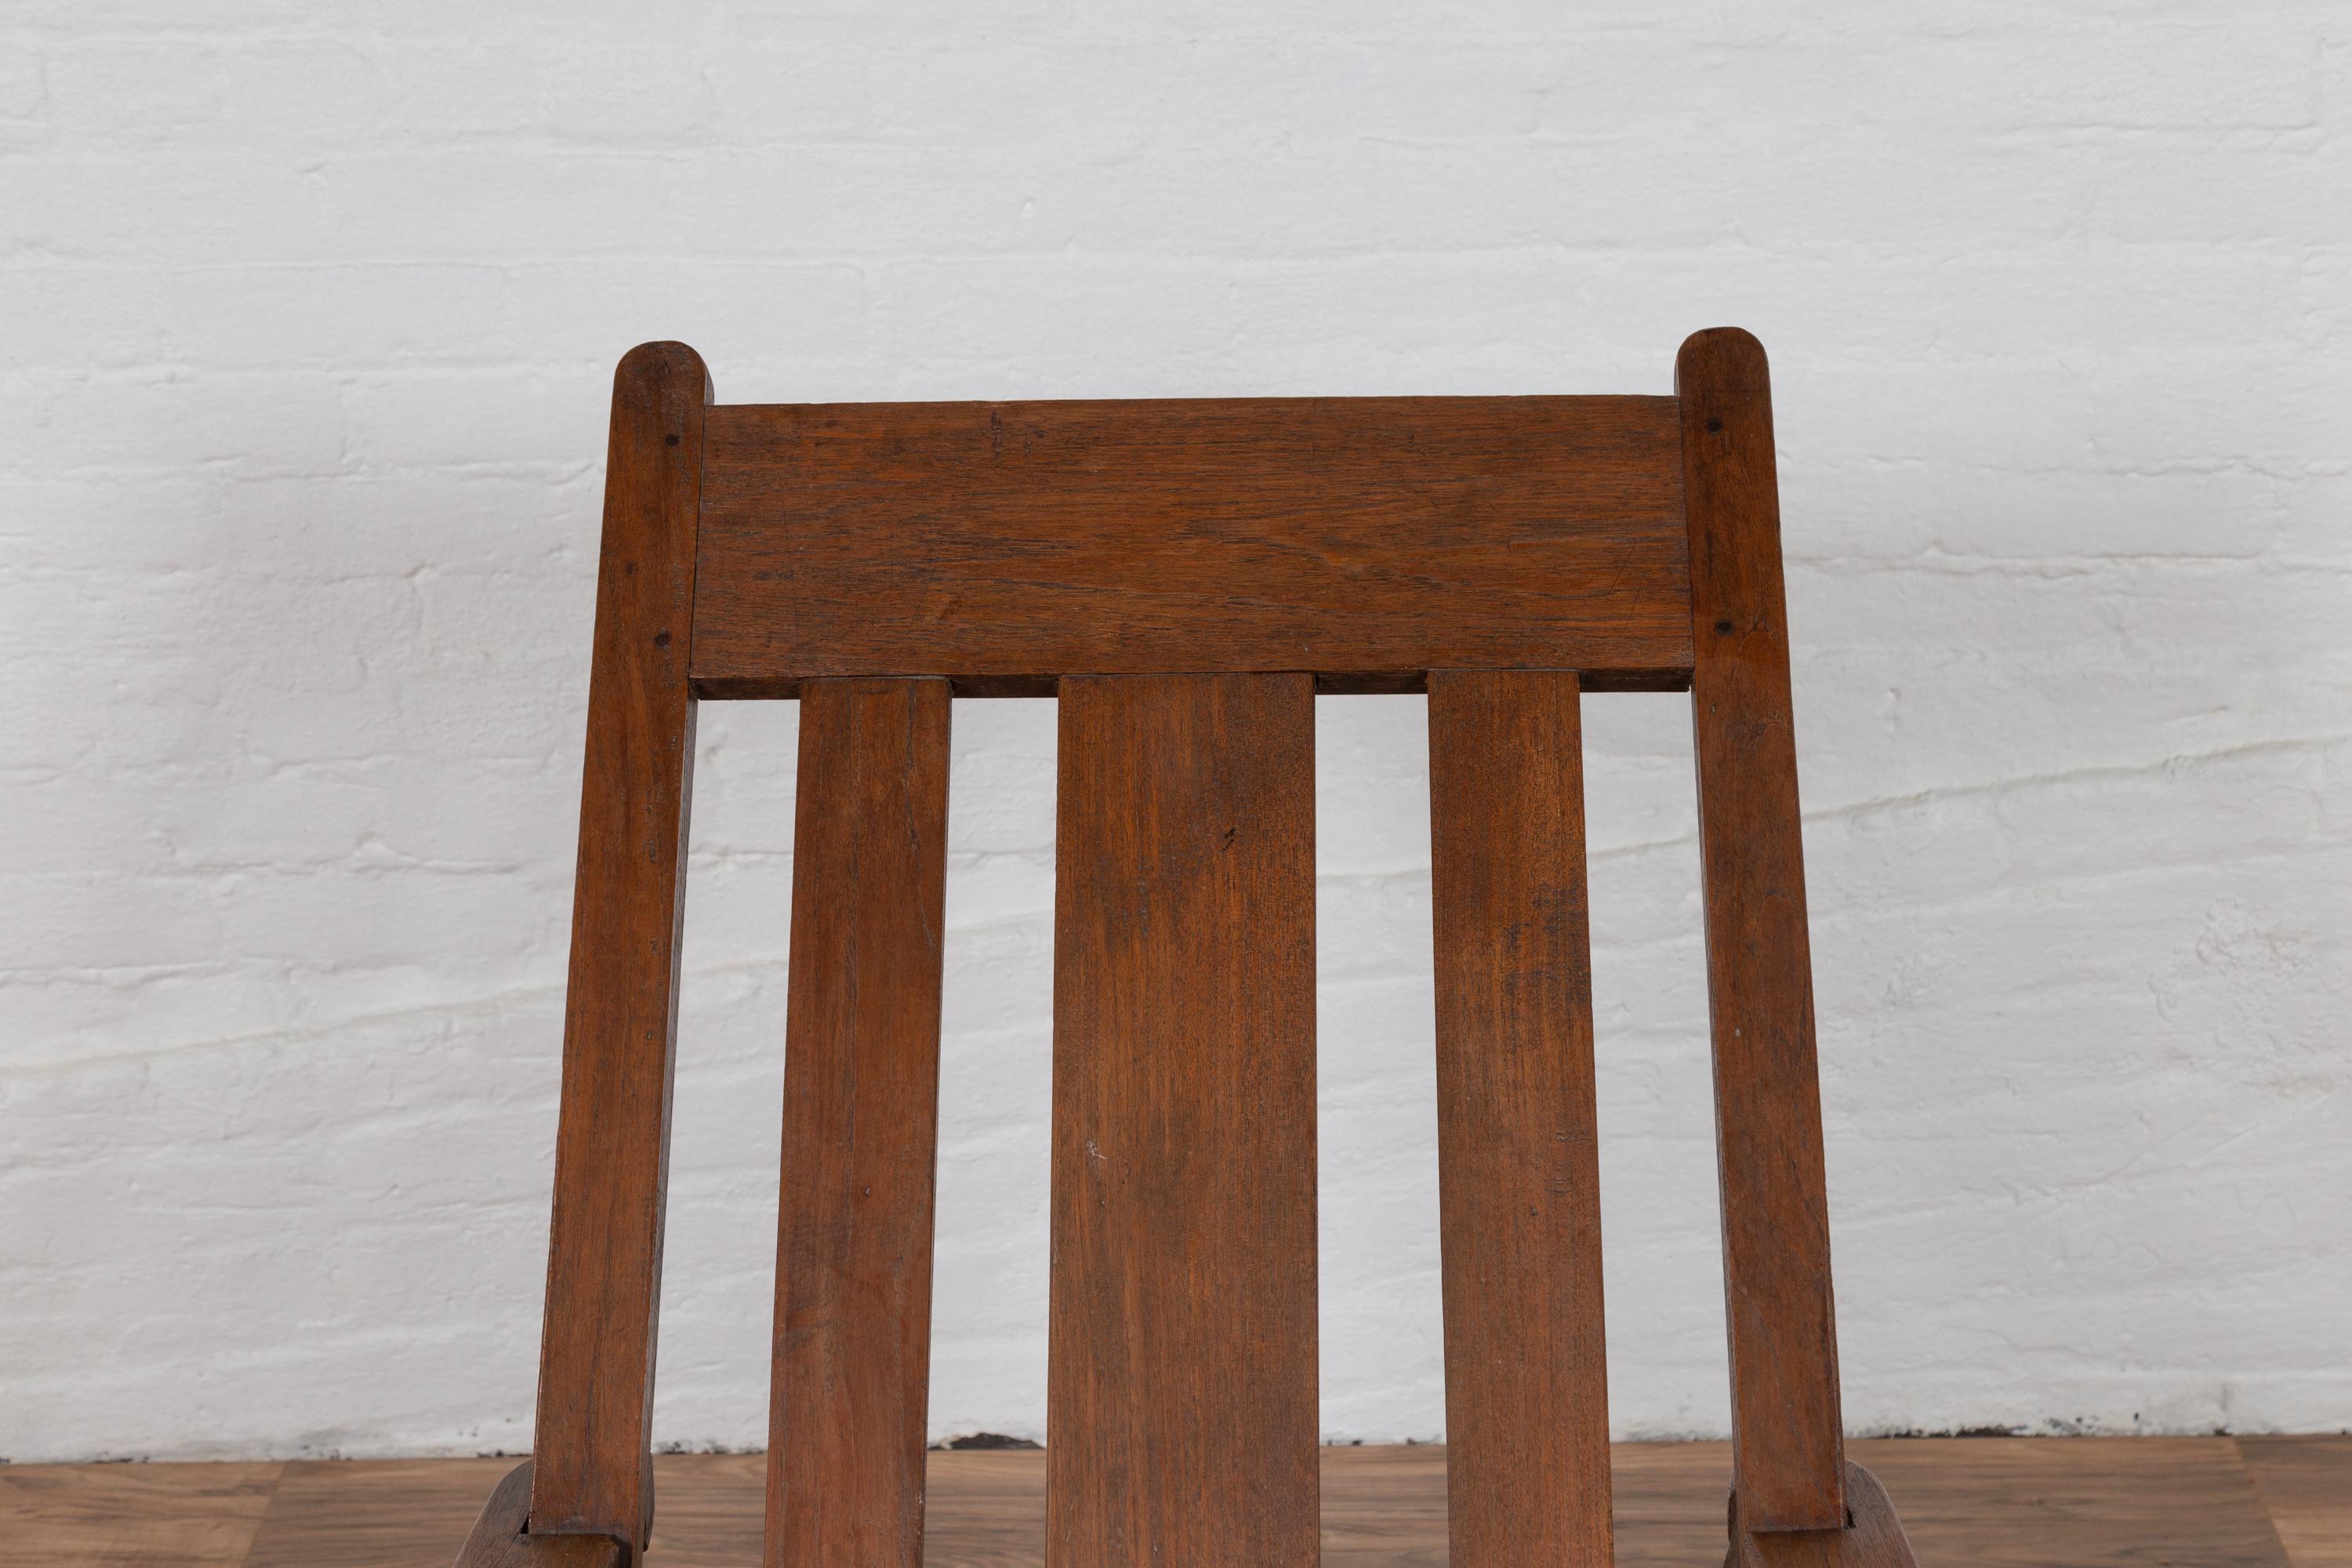 Ein antiker Plantagen-Sessel aus dem niederländischen Kolonialstil des frühen 20. Jahrhunderts aus Madura, Indonesien, mit schräger Rückenlehne und langen Armlehnen. Dieser Sessel im holländischen Kolonialstil, der auf Madura an der Nordostküste